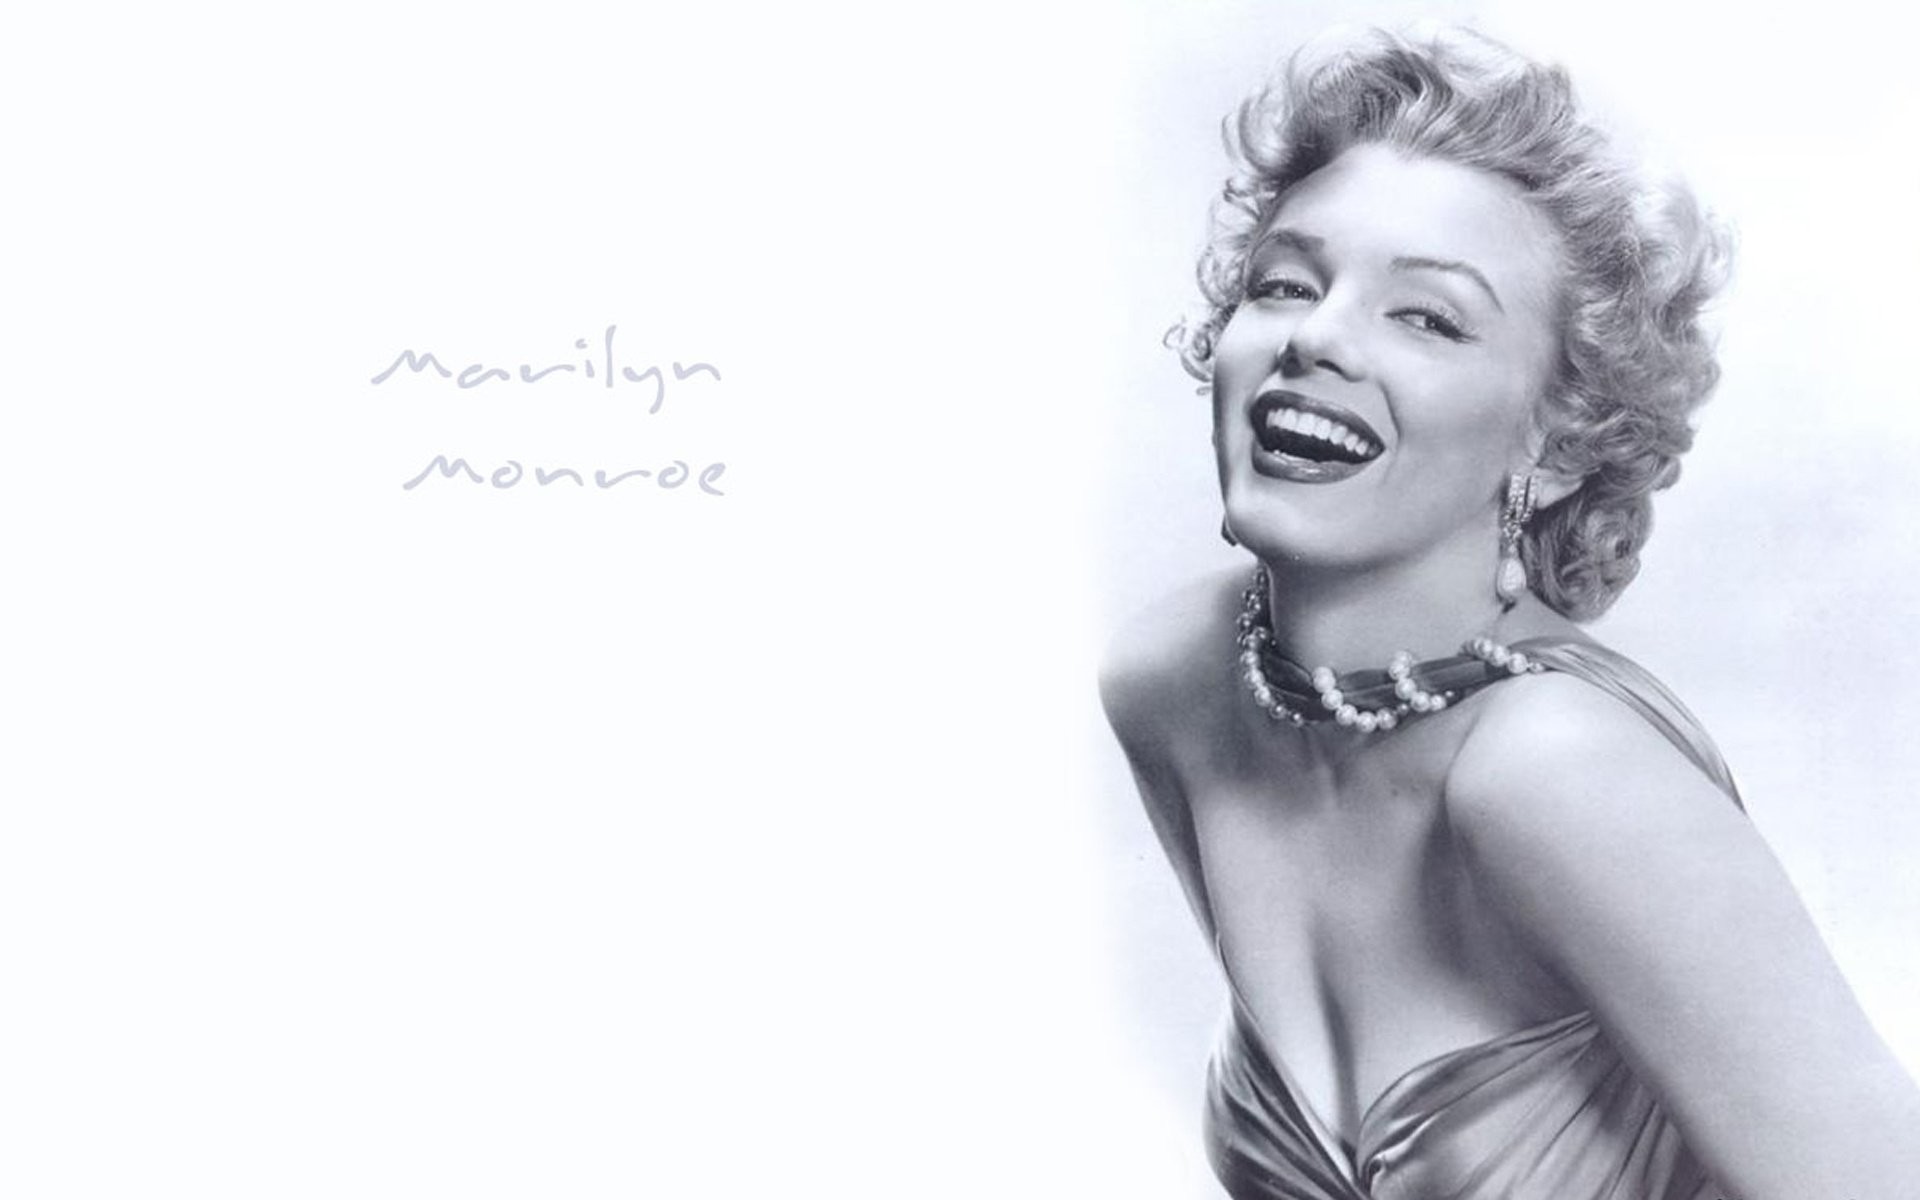 Marilyn Monroe Wallpaper - Marilyn Monroe 3 4 , HD Wallpaper & Backgrounds